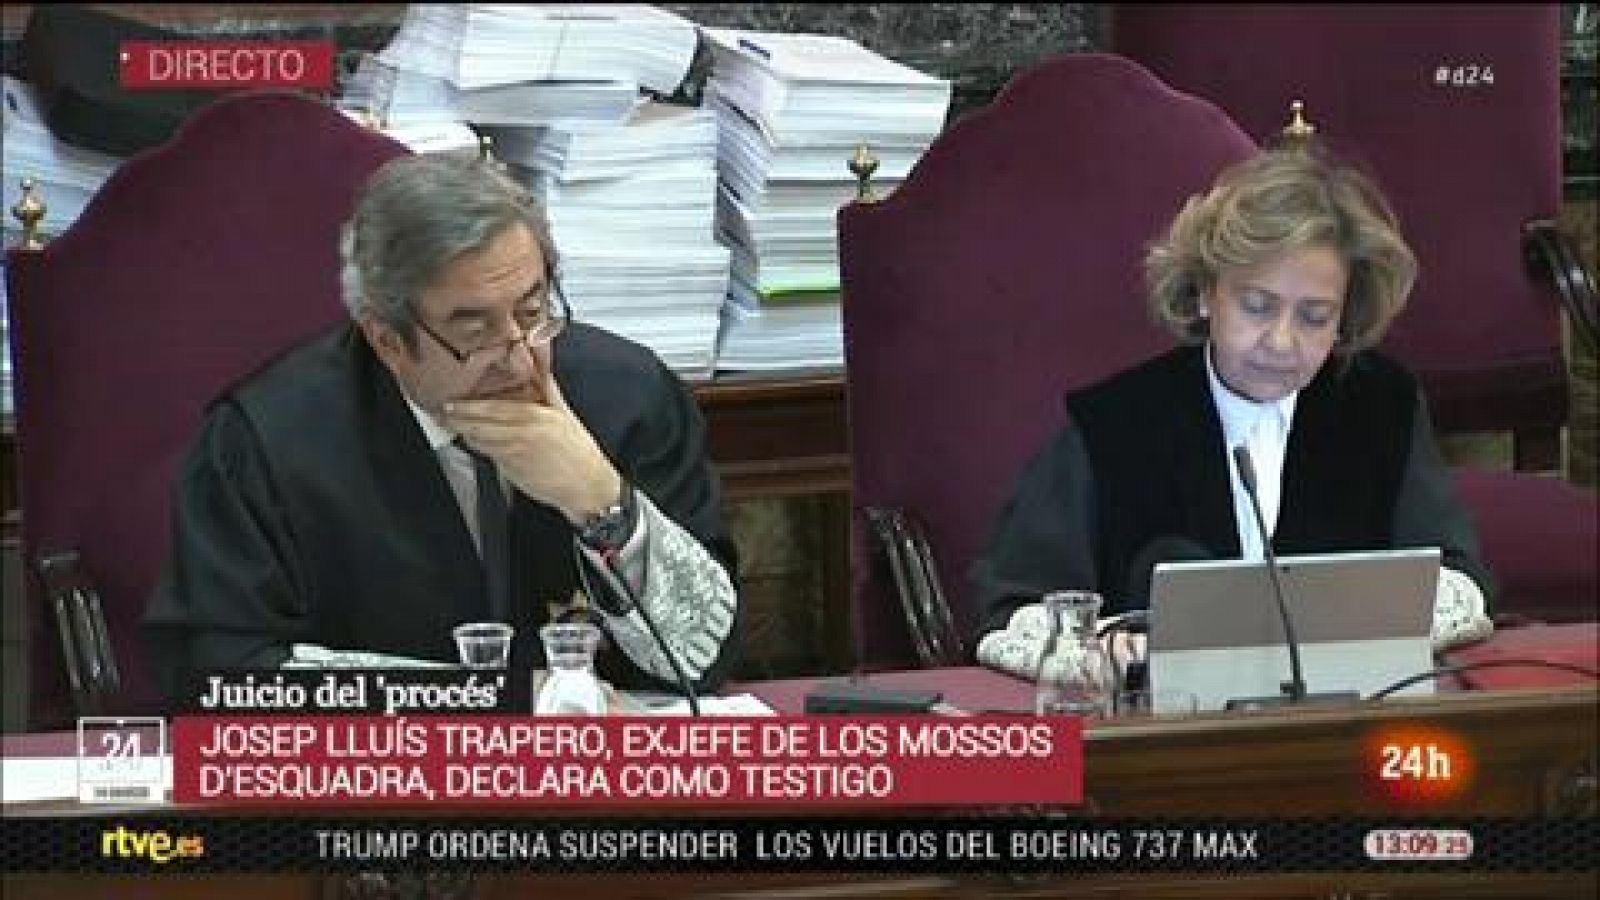 Juicio procés: Trapero declara que Jané y él estaban "incómodos" con la "deriva política" del Govern